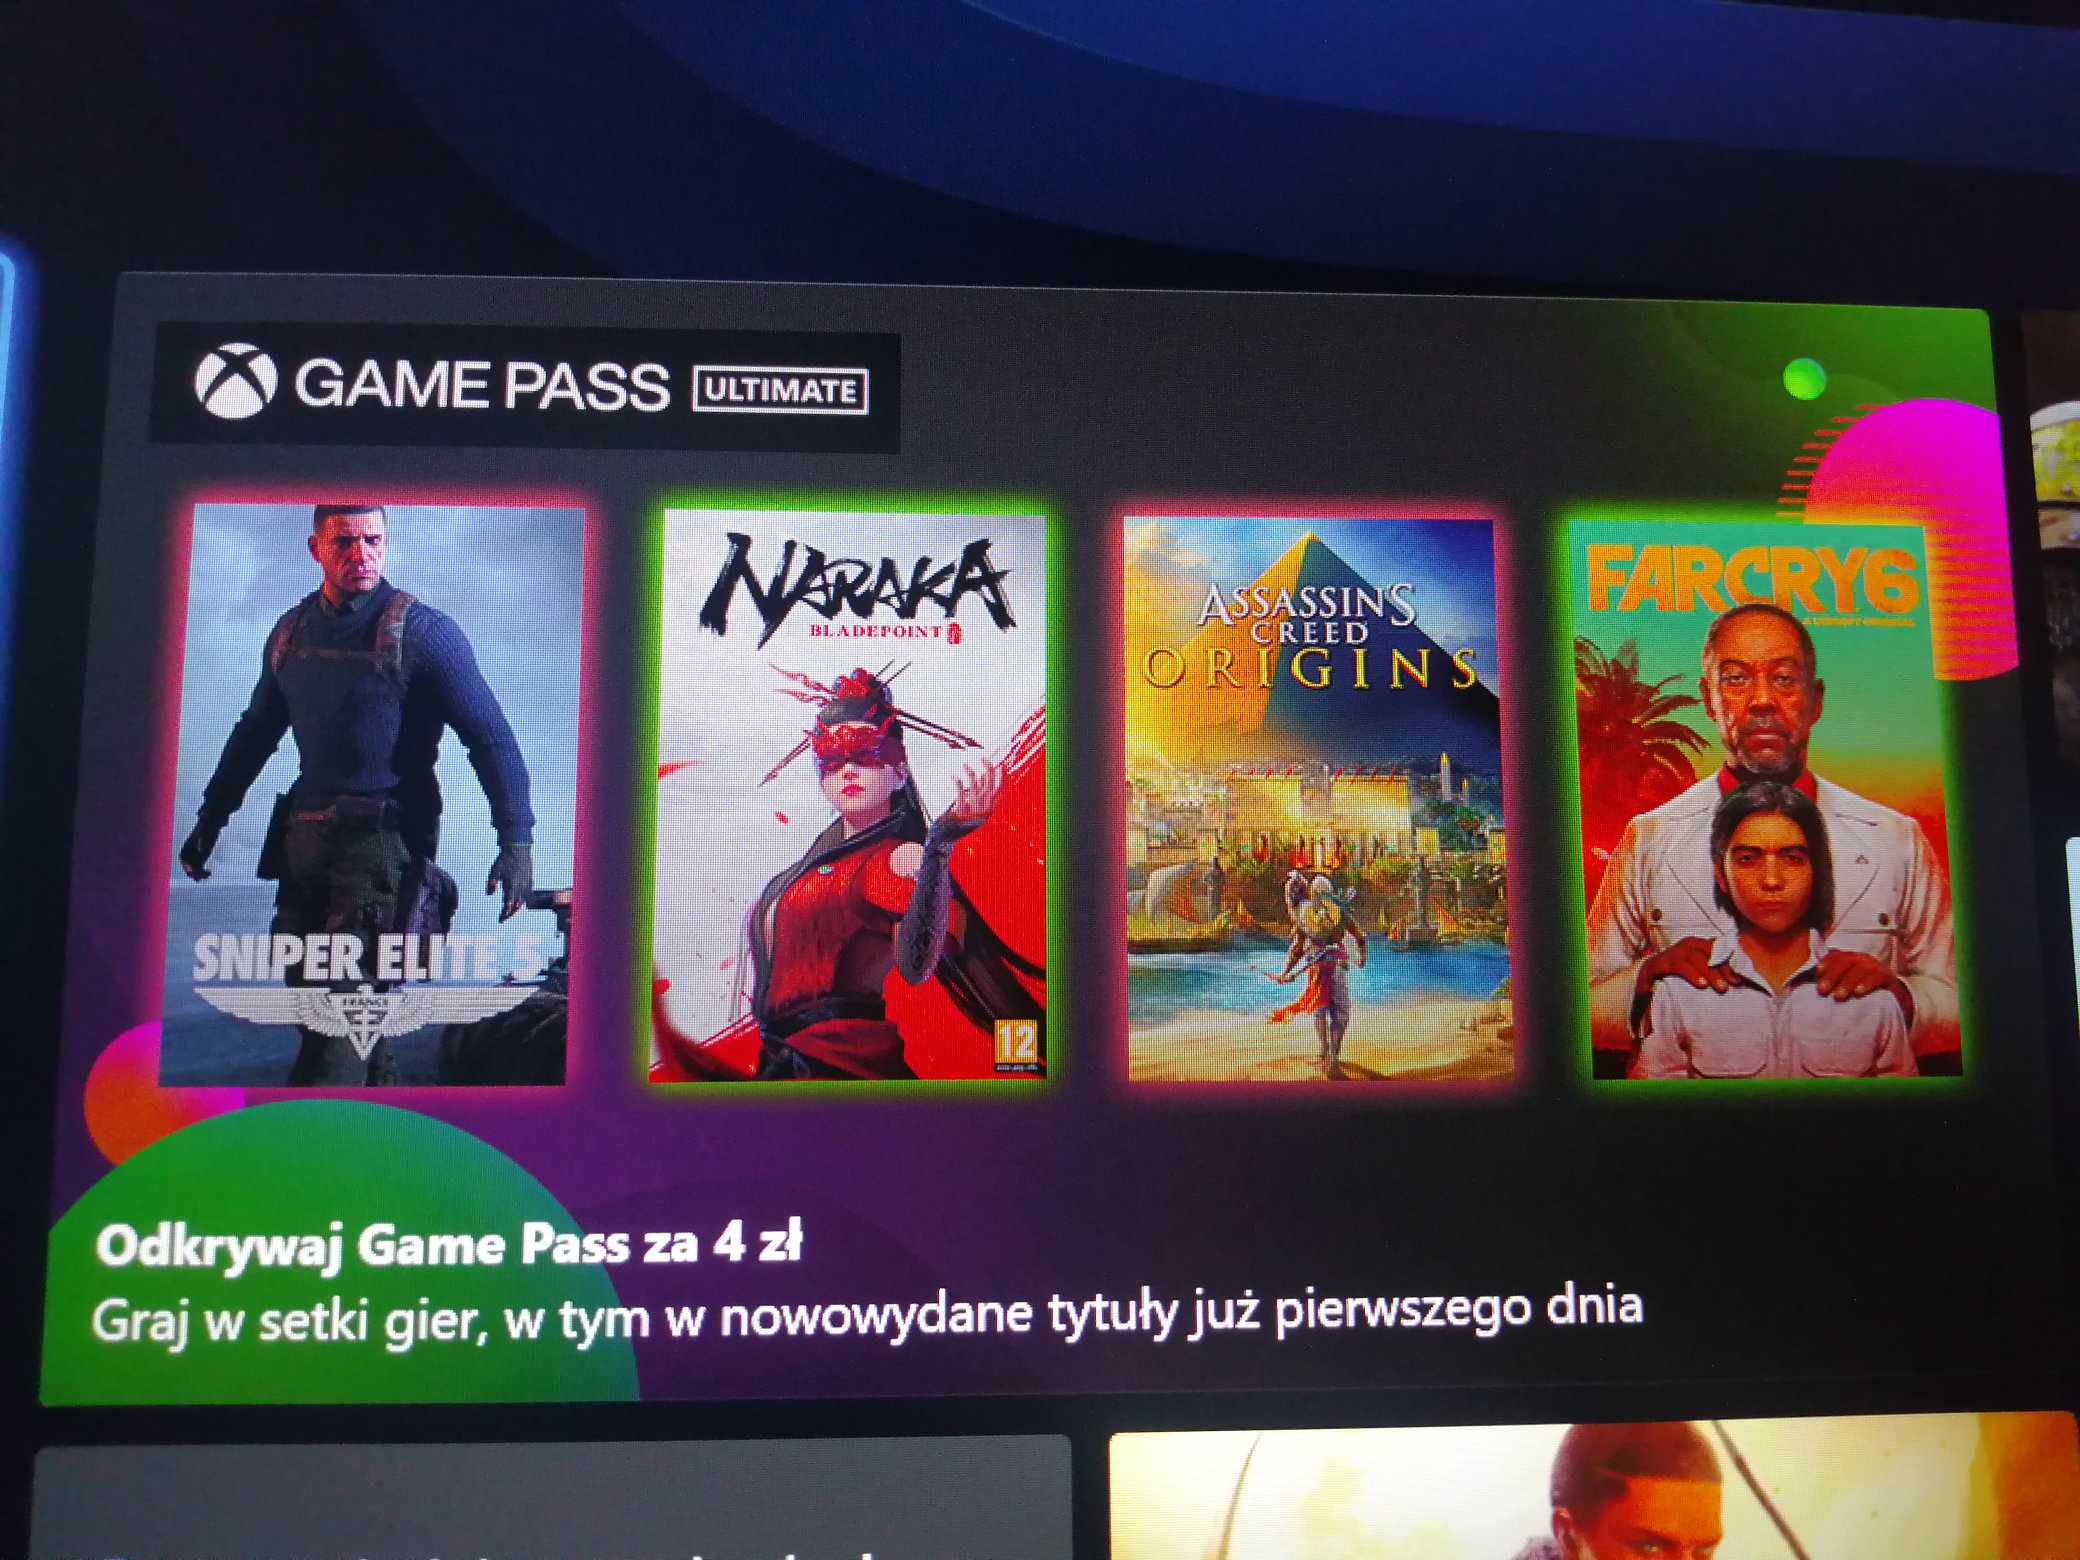 Утечка: В Game Pass попадет еще одна игра от Ubisoft